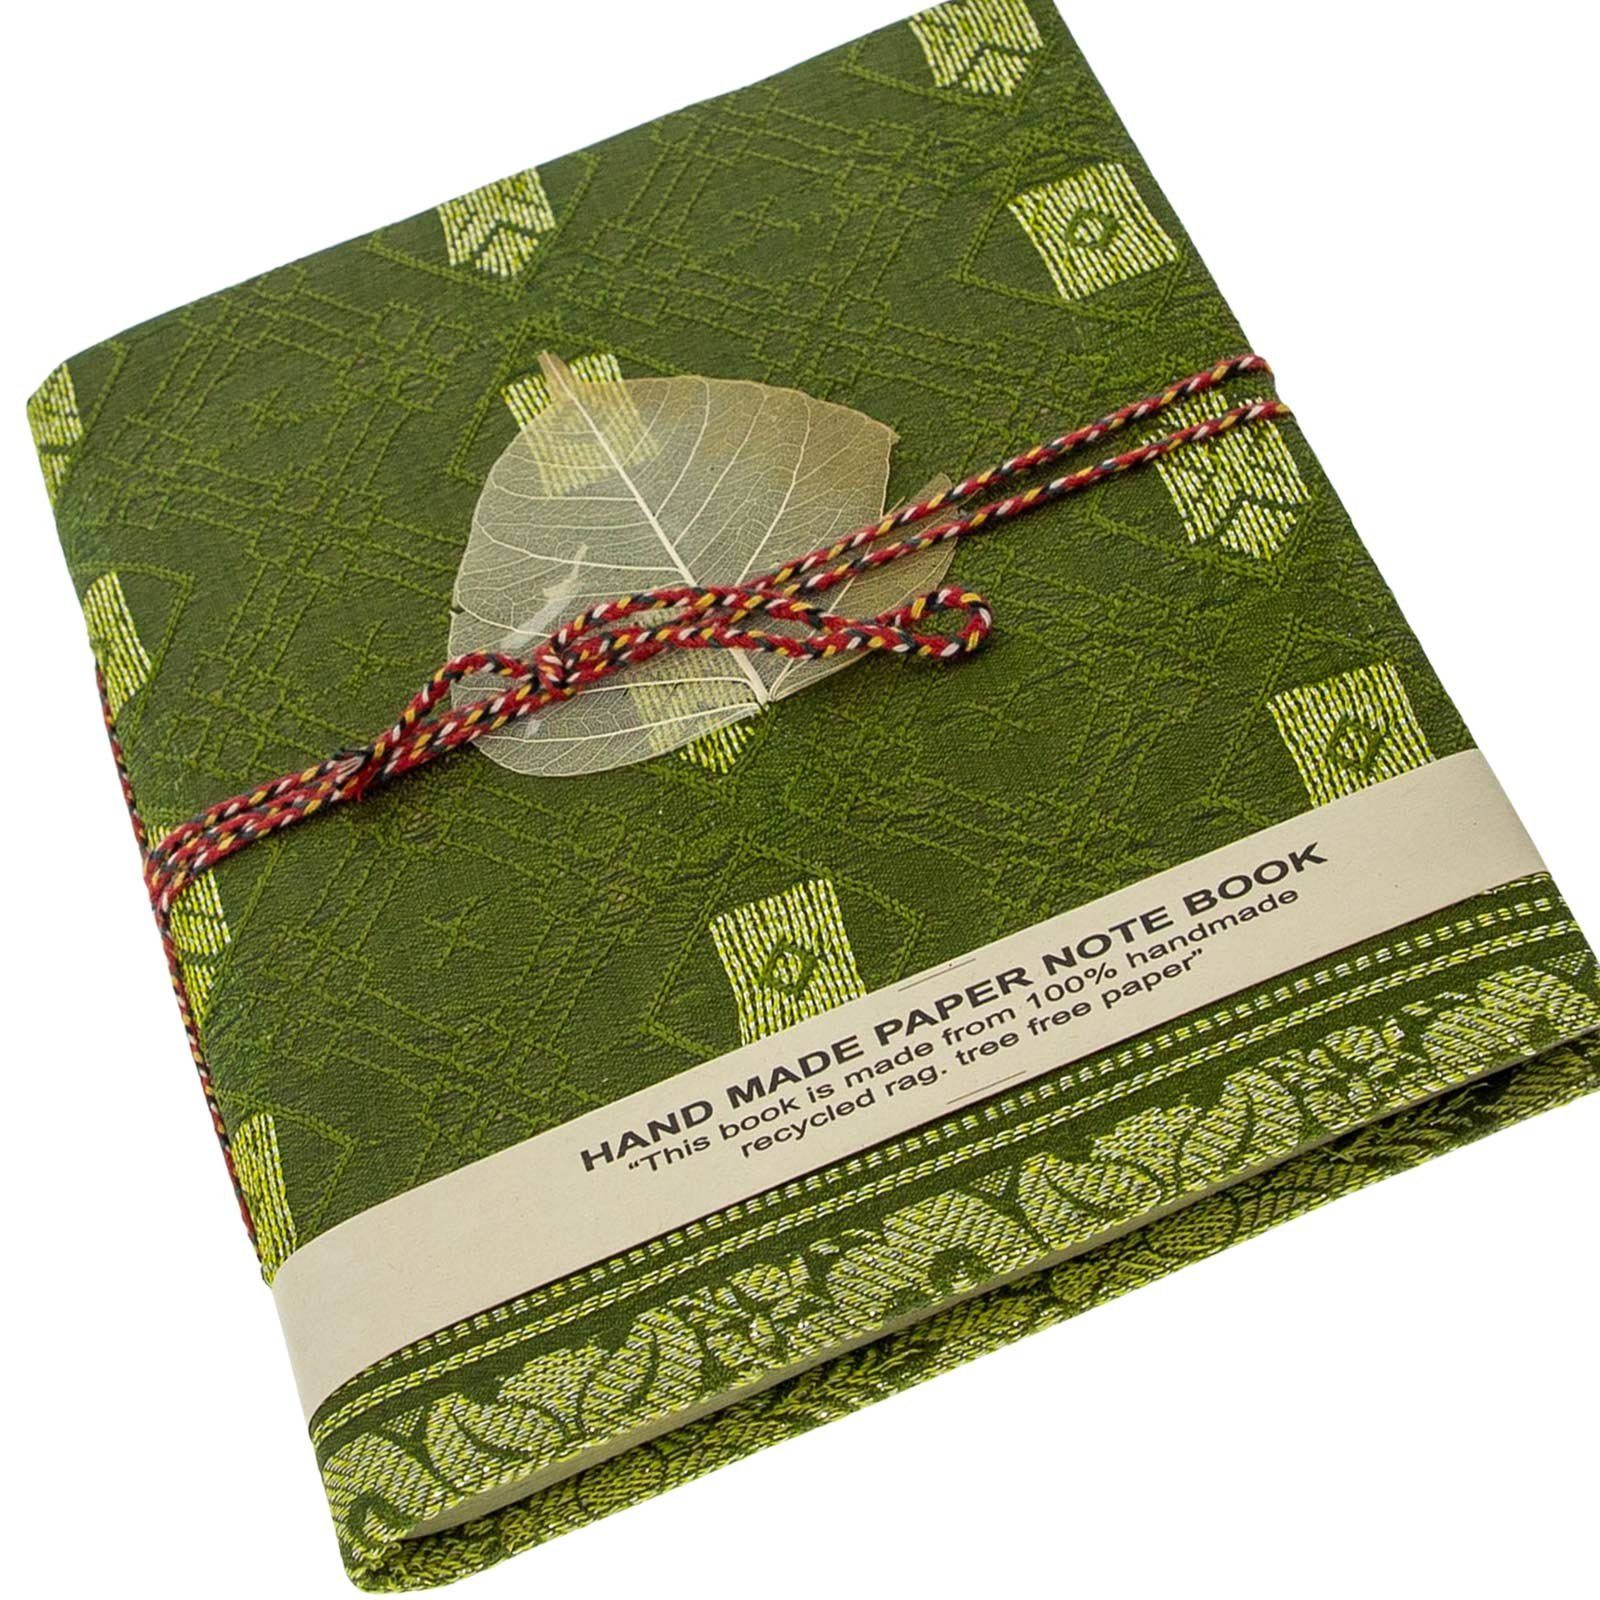 Sari 12,5x17cm KUNST handgefertigt Tagebuch UND Baumwollpapier-Notizbuch Poesie MAGIE Tagebuch